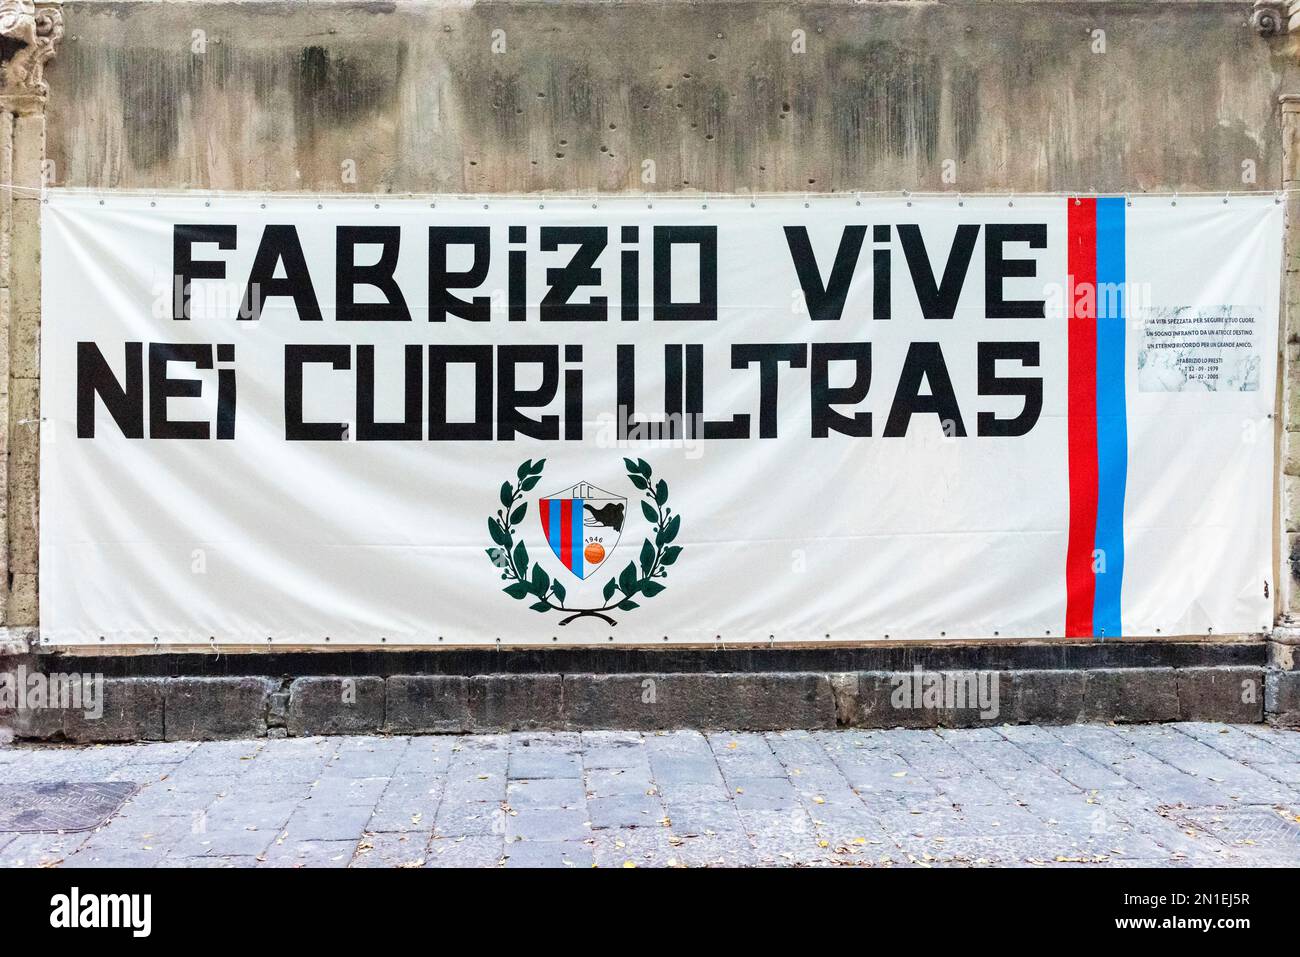 Un memoriale per un membro degli Ultras (fanatici e spesso violenti tifosi di calcio) a Catania, Sicilia, Italia Foto Stock